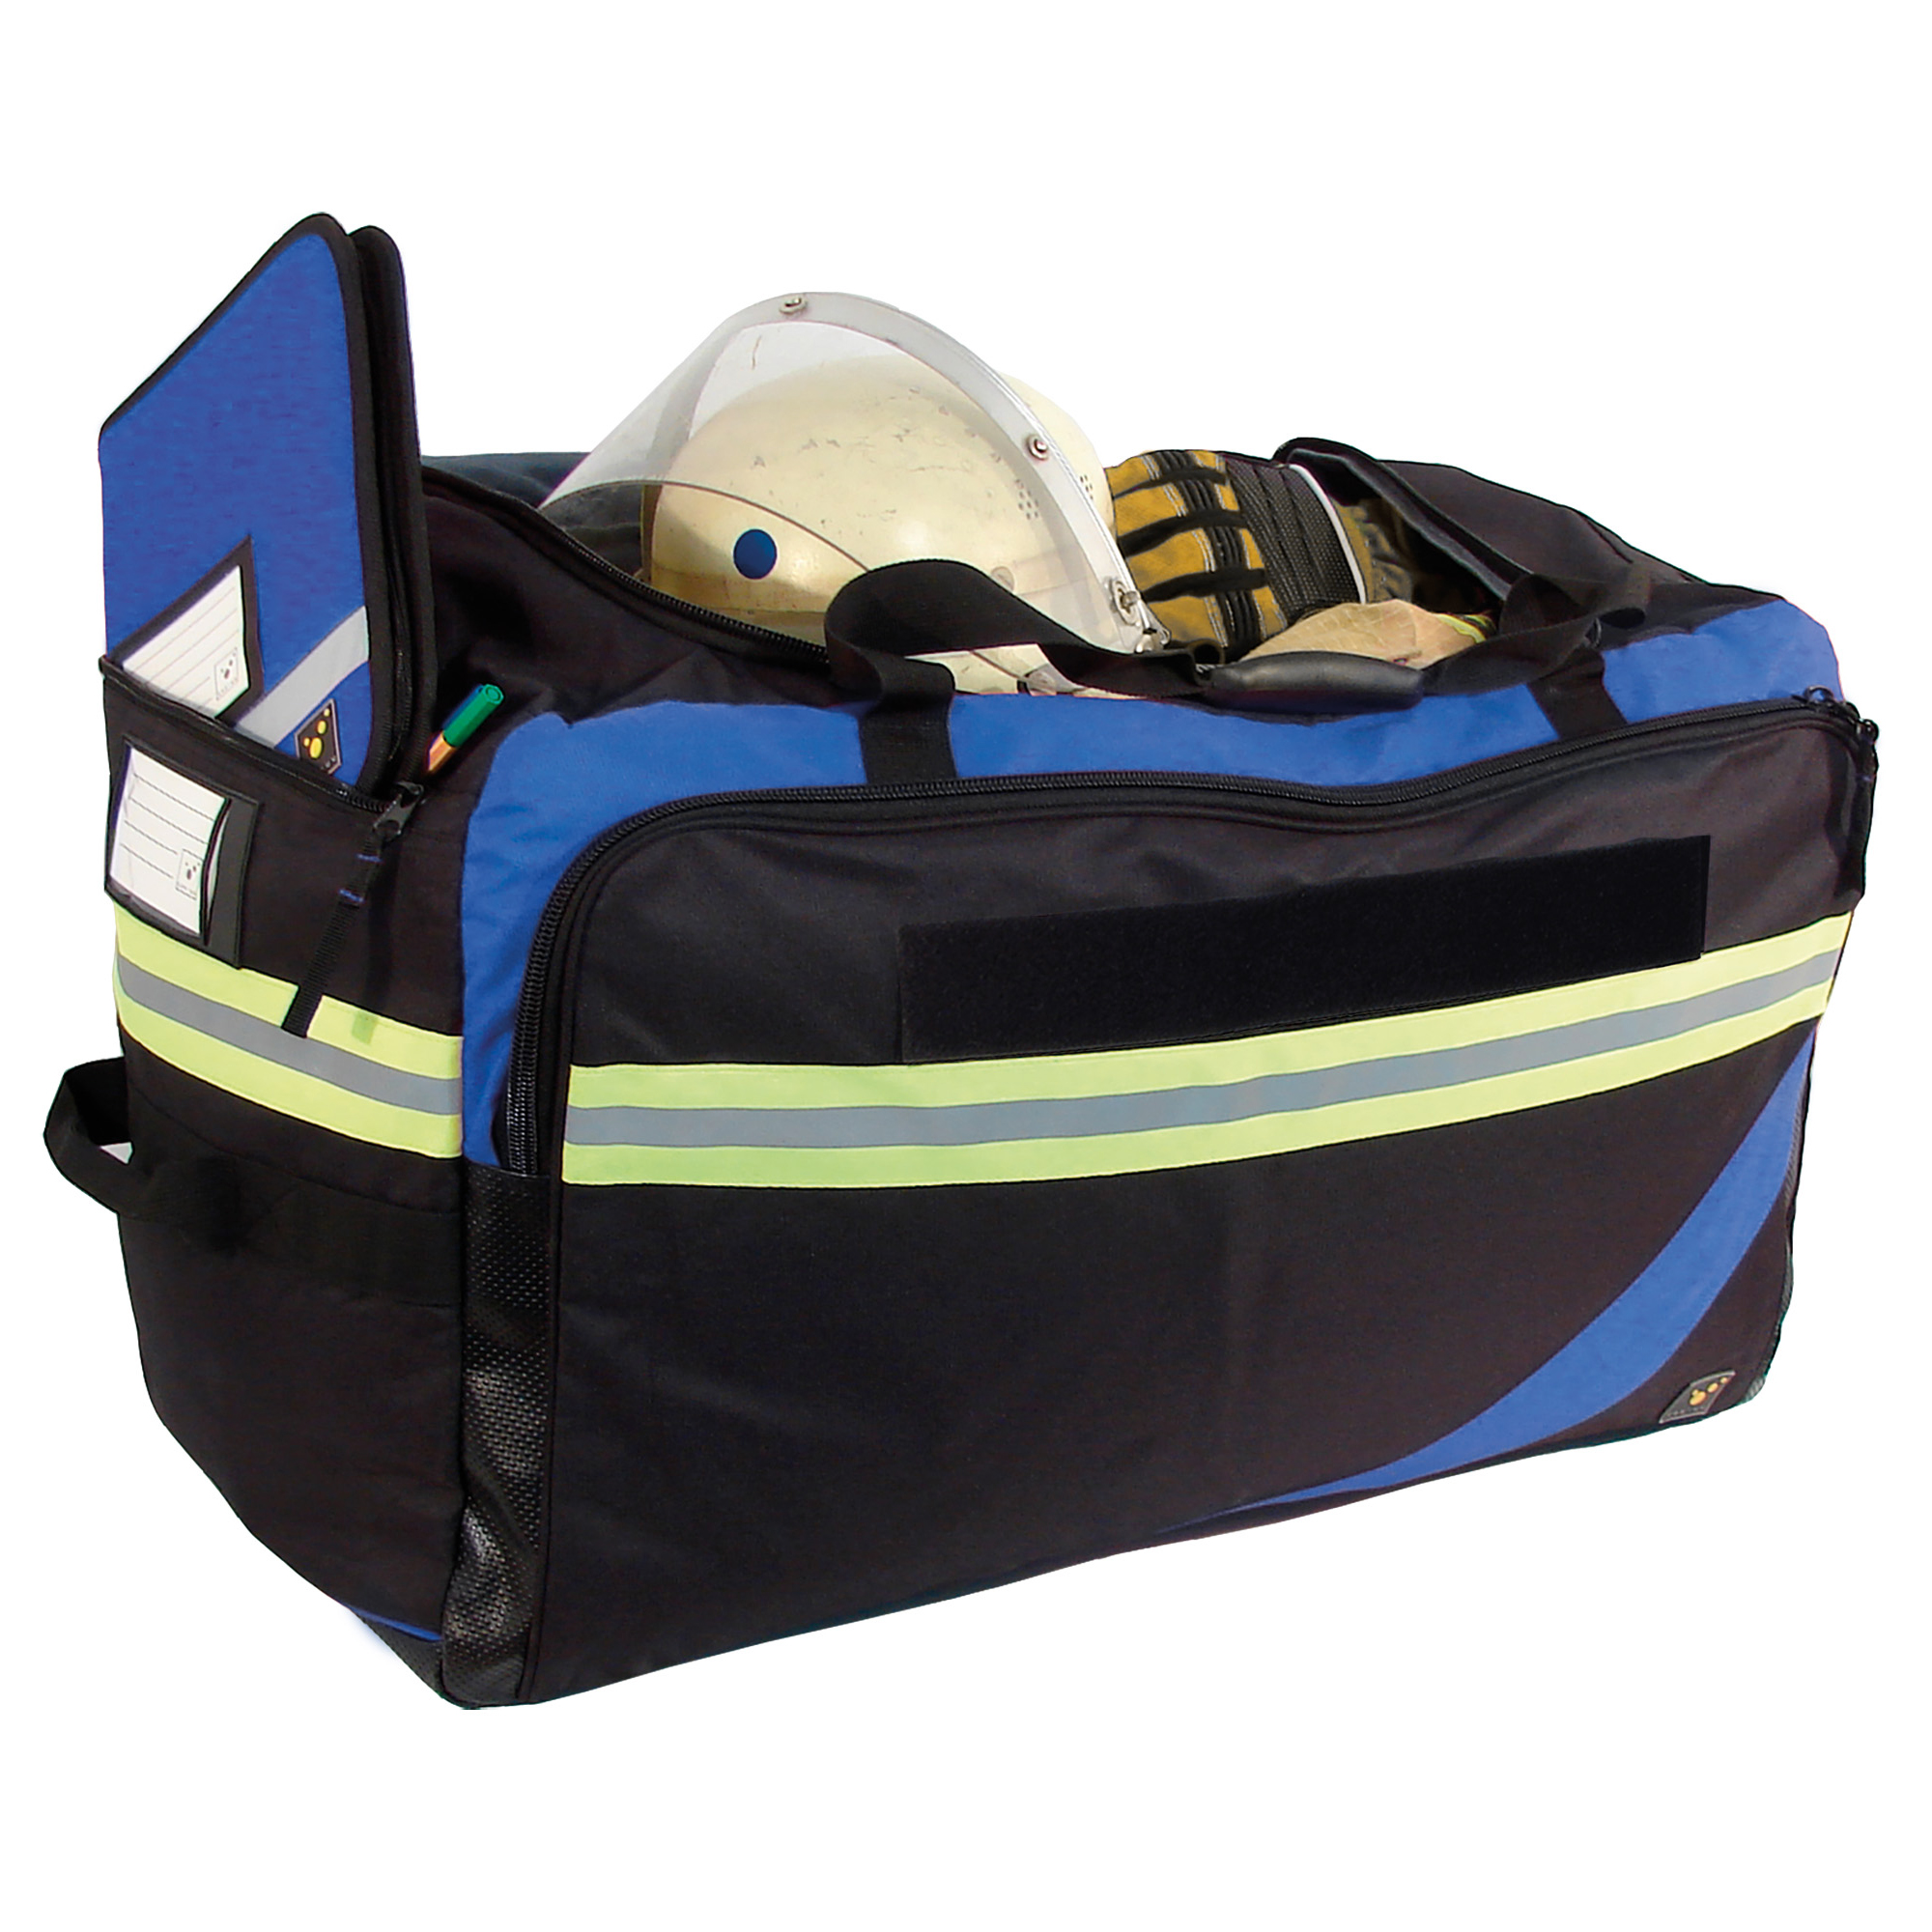 tee-uu RAGBAG PRO Bekleidungstasche 43 x 70 x 38 cm. Die RAGBAG PRO bietet mit ihrem gepolstertem Hauptfach (90 Liter Volumen) Platz für umfangreiche persönliche Schutzausrüstung. Große Bekleidungstasche mit Rucksacktragesystem.